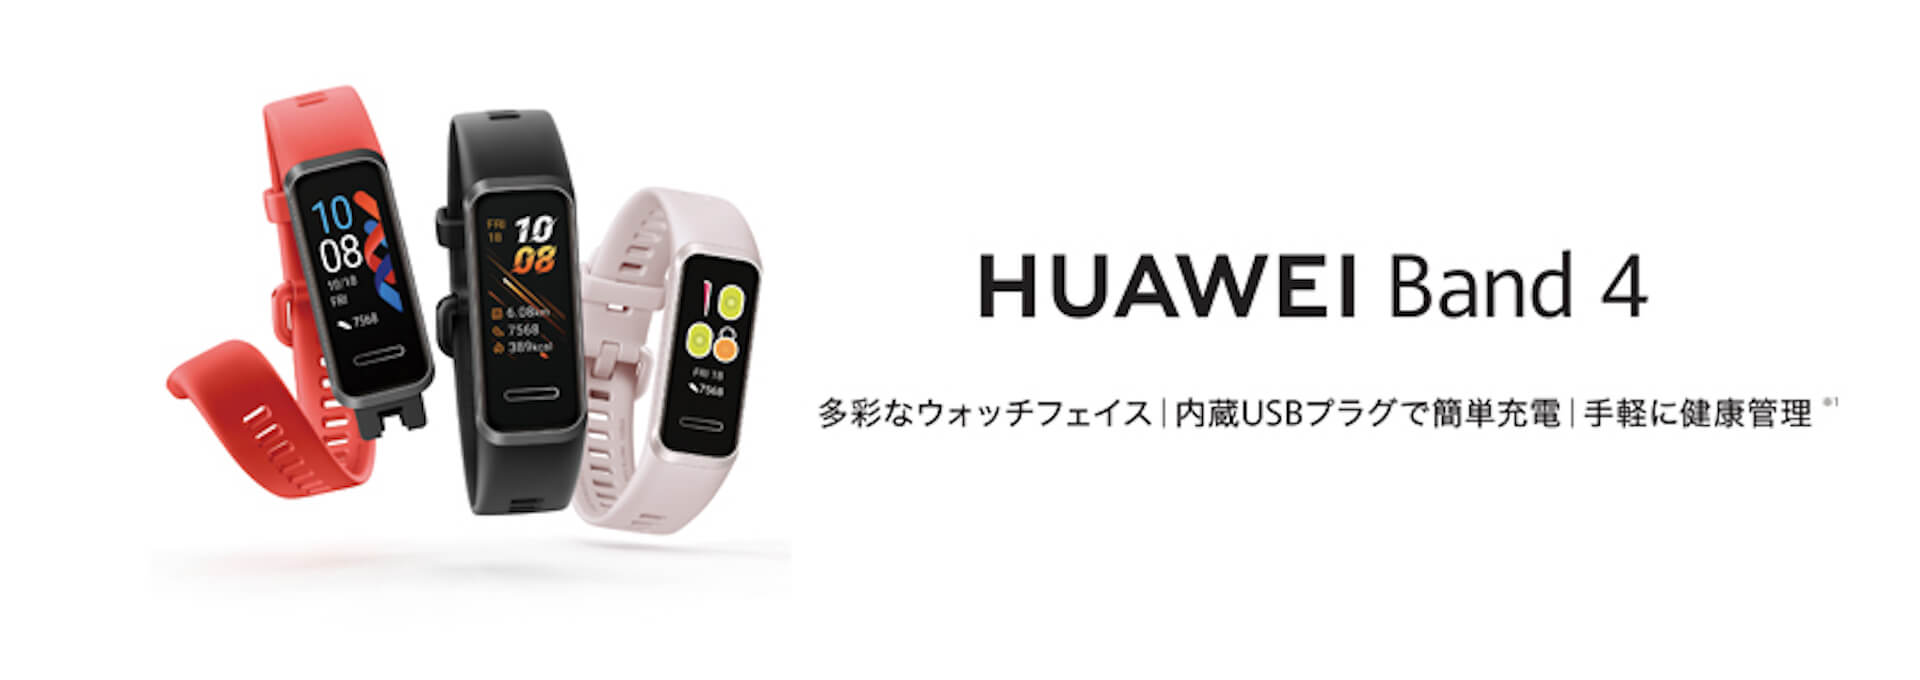 USBポートに直挿し可能の新スマートバンド「HUAWEI Band 4」が登場｜ディスプレイは160×80ピクセルの高解像度を実現 tech_191114_huawei_5